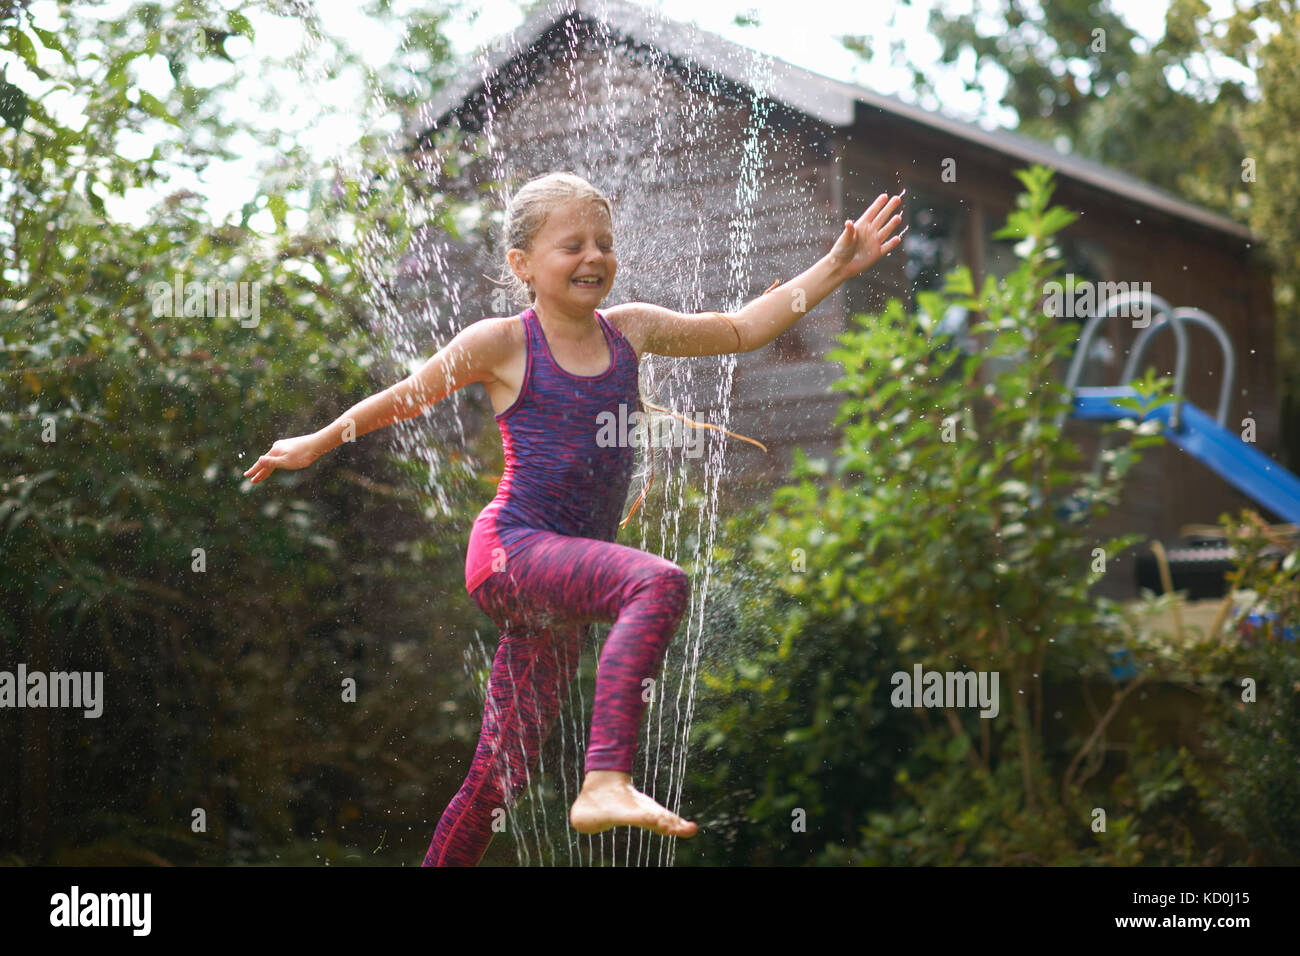 Mädchen über Garten Sprinkler springen Stockfoto